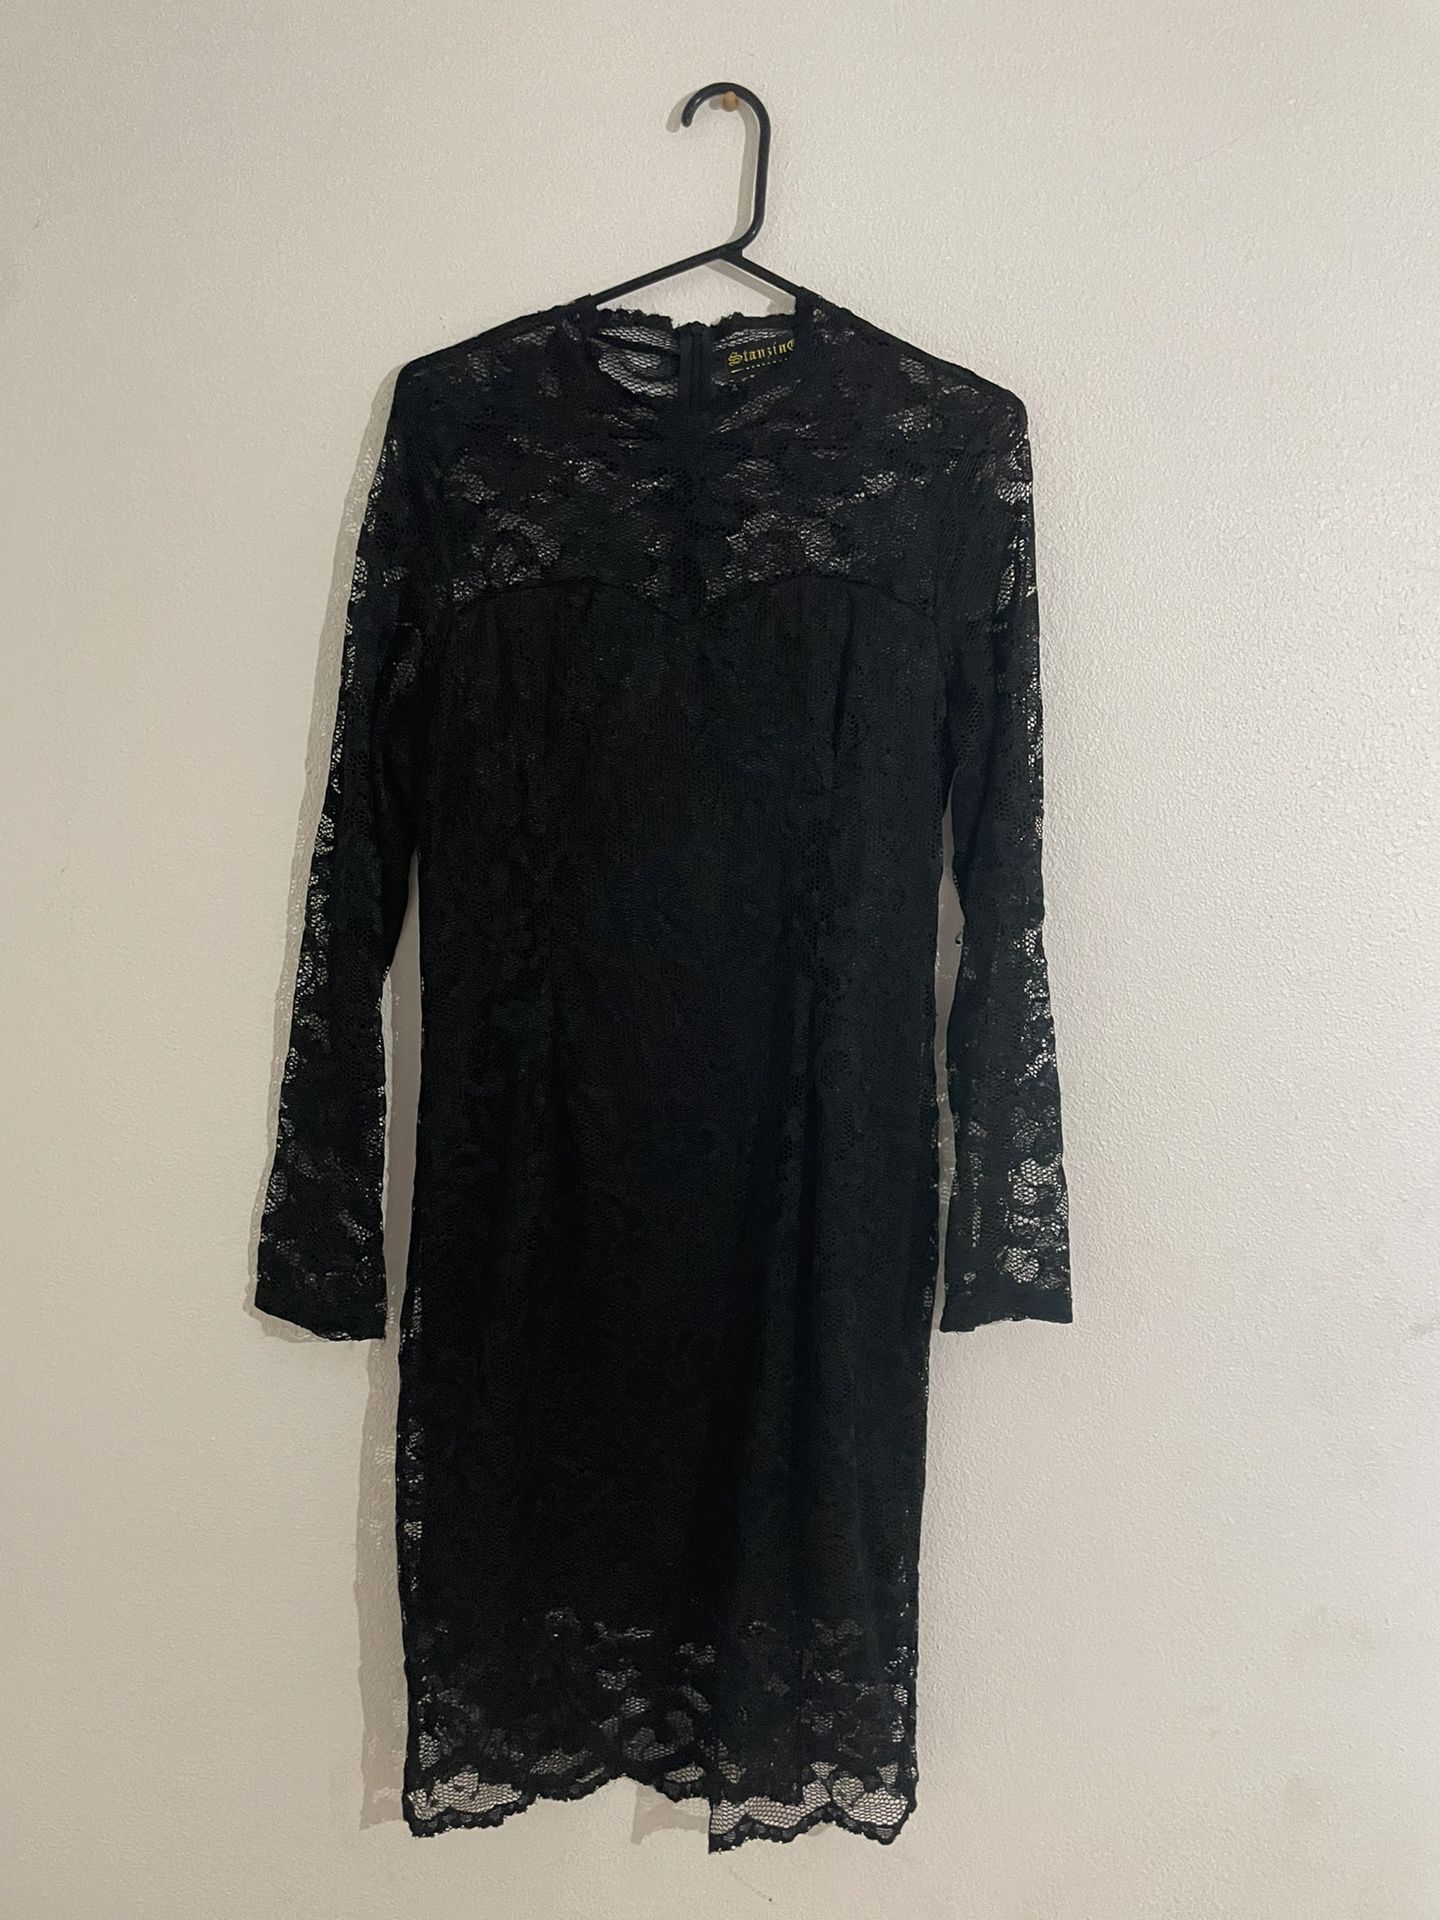 Stanzin Black Long Sleeve Lace Dress